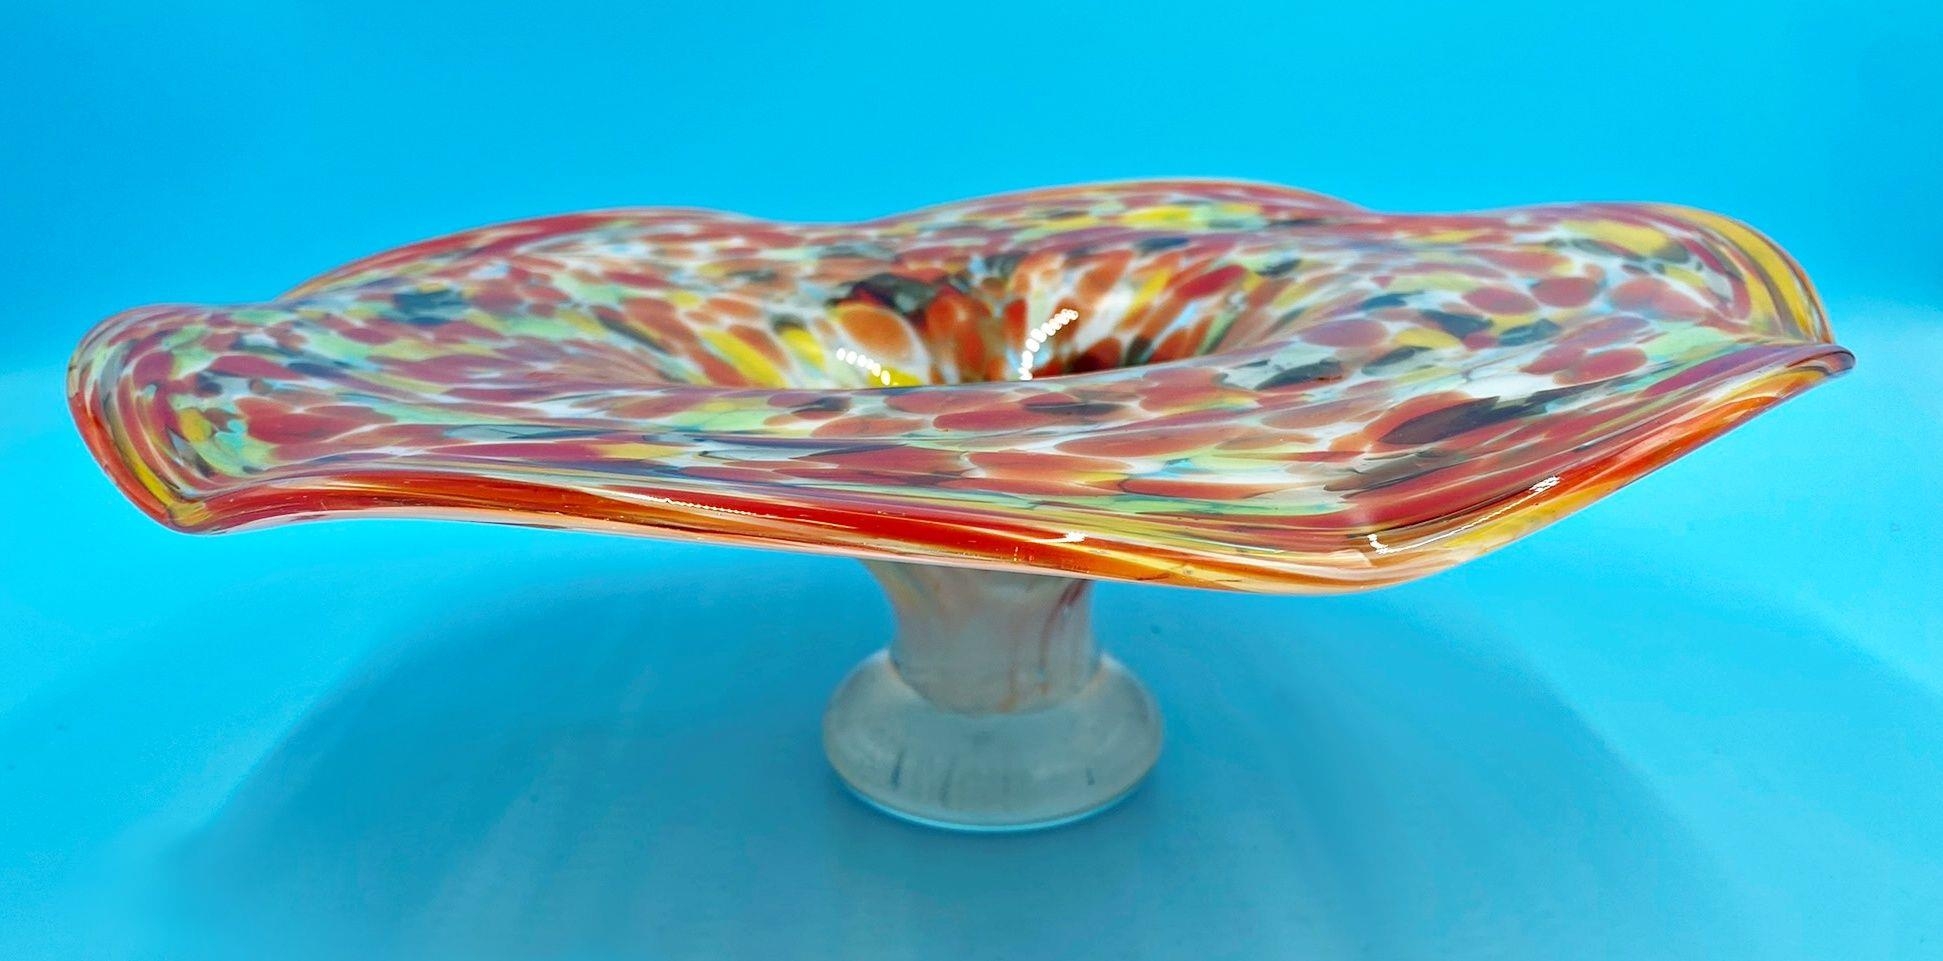 Murano confetti glass centre dish, 12 high x 37 cm diameter